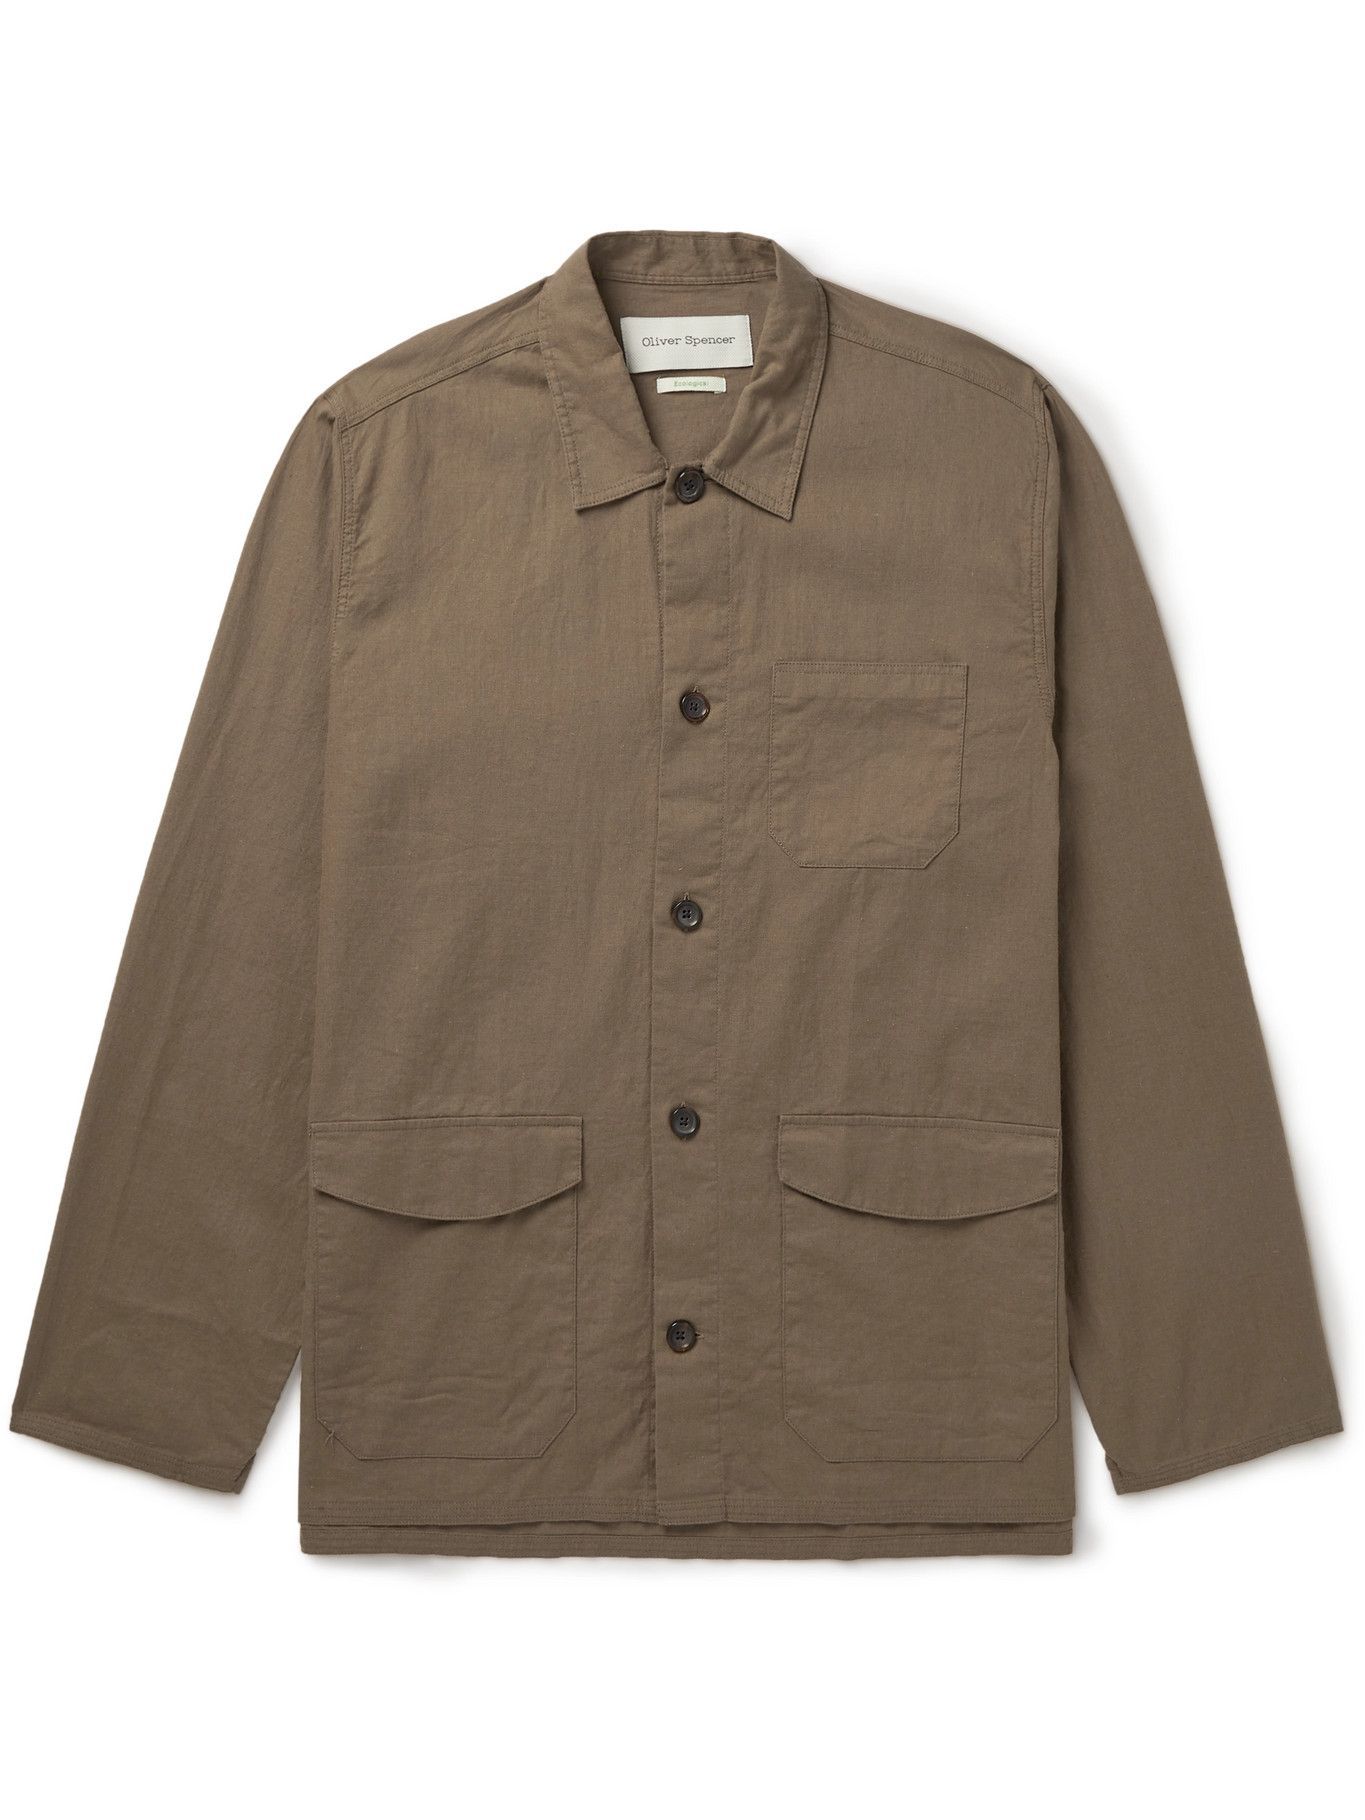 OLIVER SPENCER - Hockney Linen and Cotton-Blend Shirt Jacket - Green